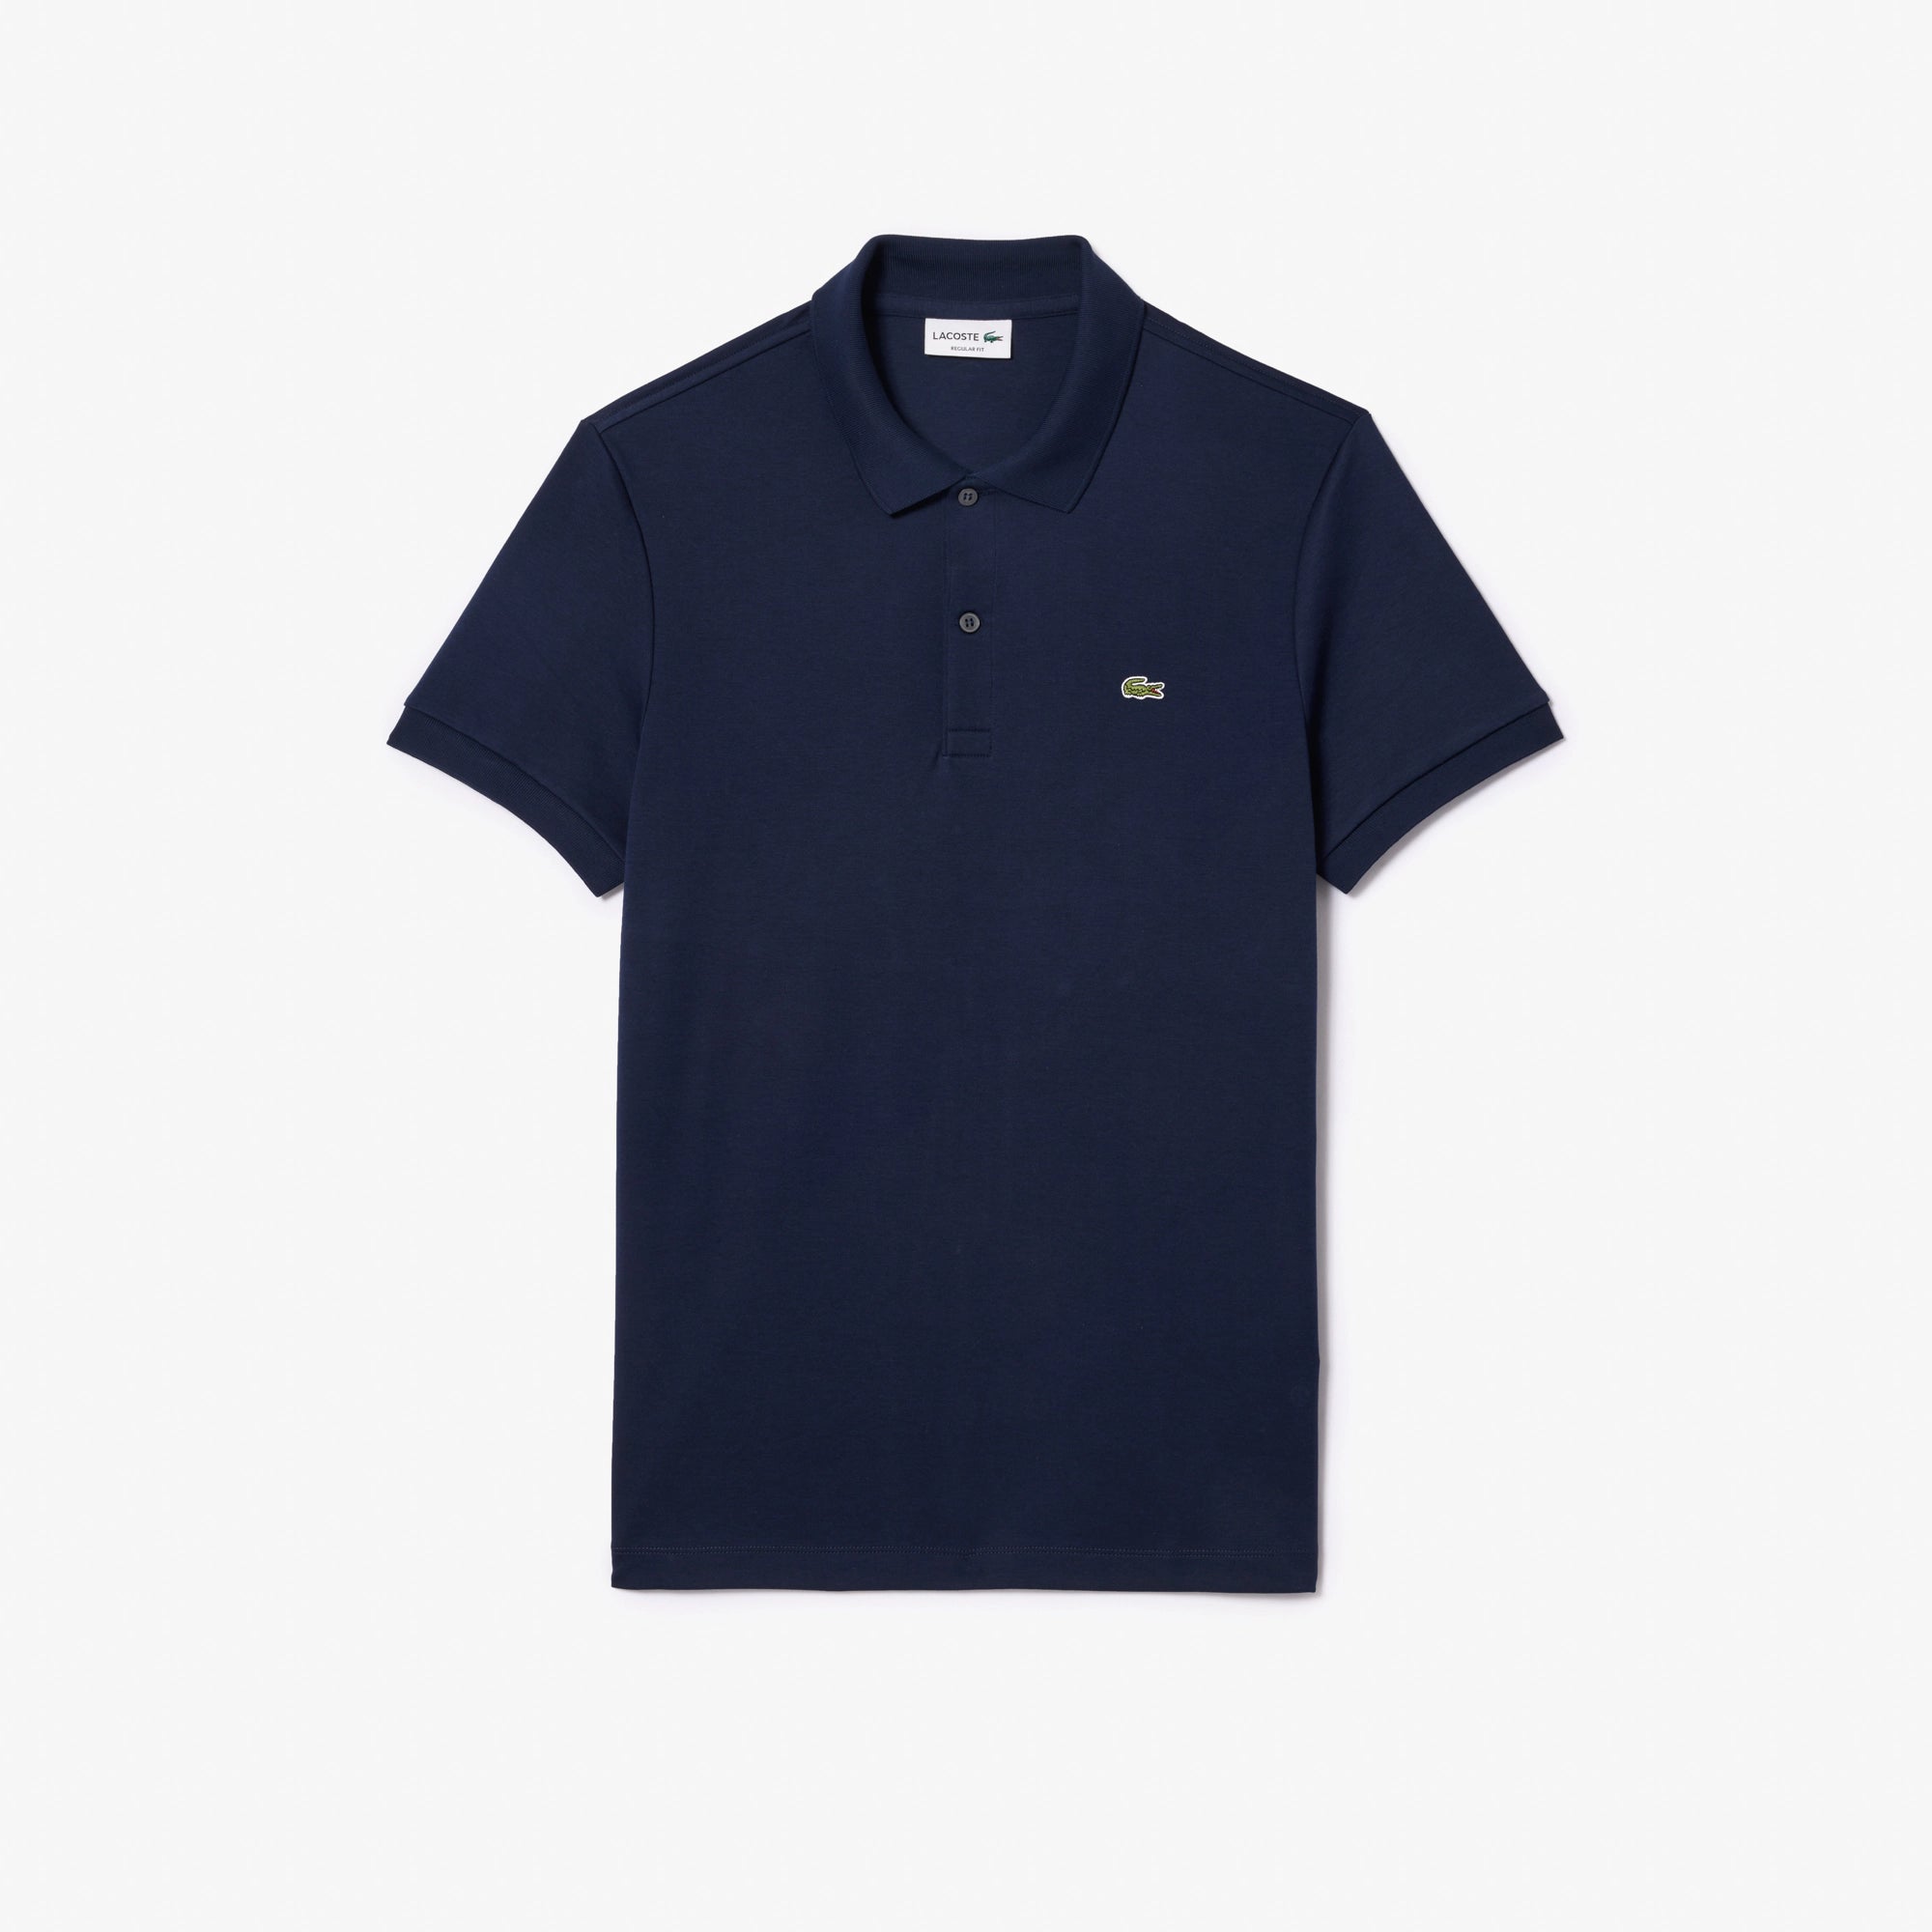 LACOSTE Men's Navy Blue Polo Shirt